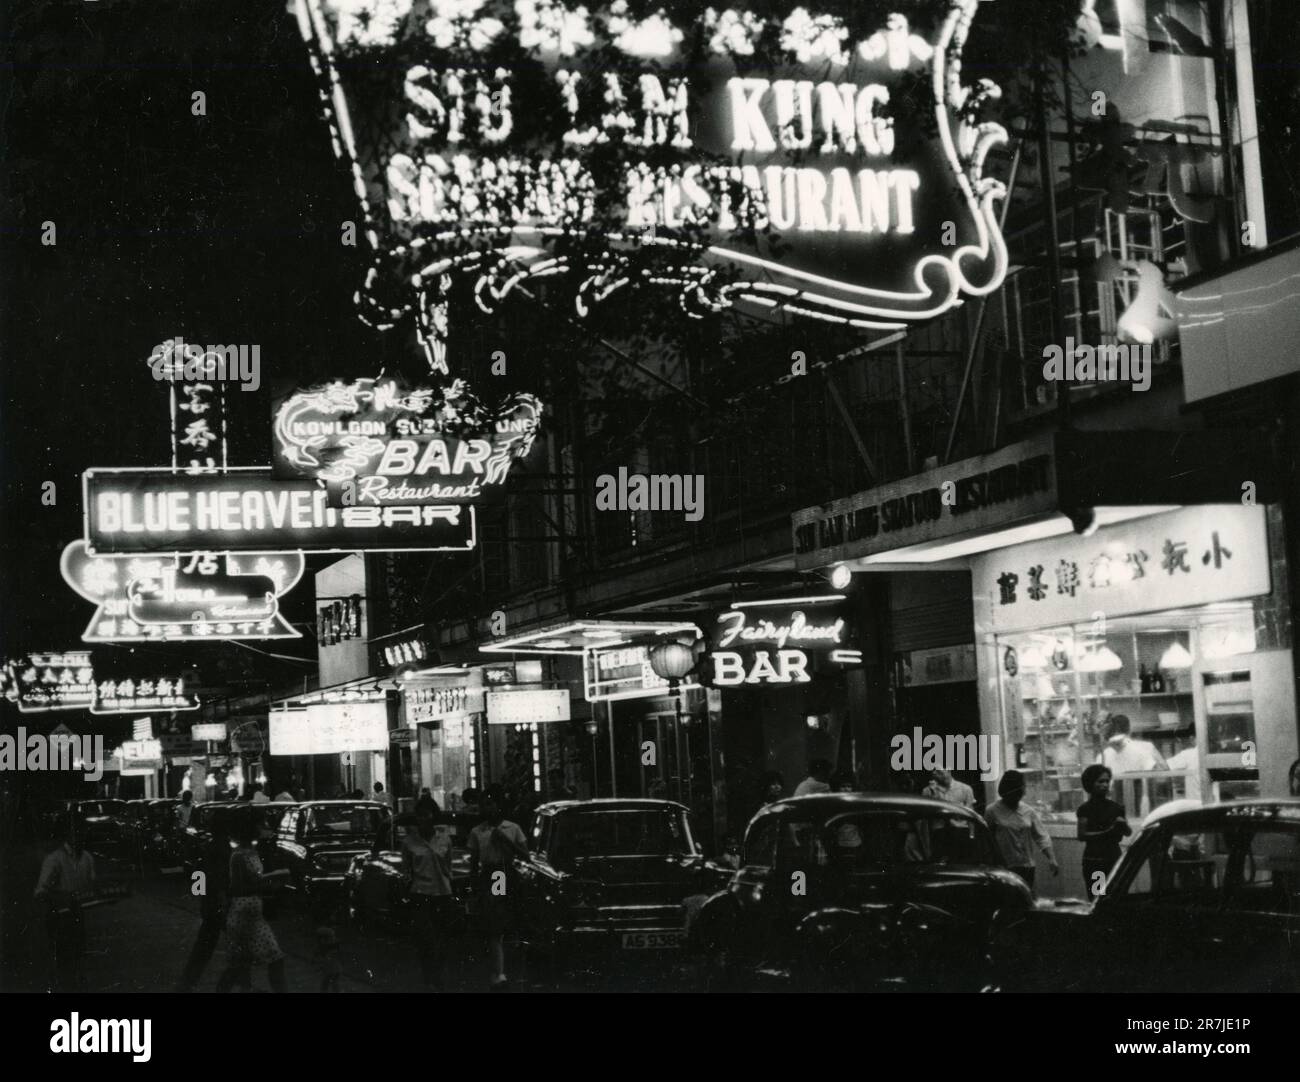 View of Siu Lam Kung seafood restaurant in Hong Kong, China, 1950s Stock Photo